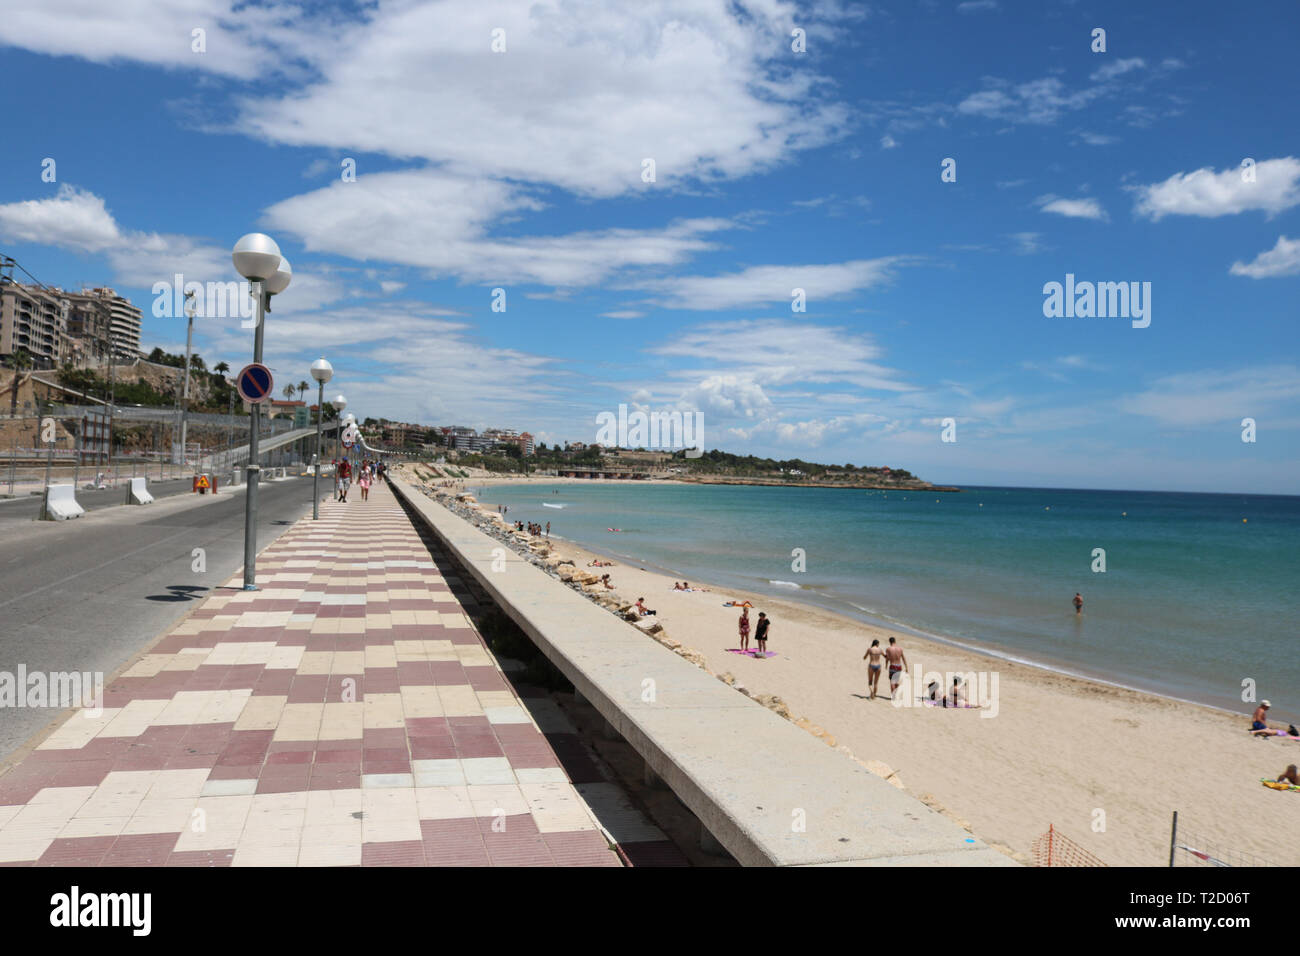 Platja del miracolo beach in Tarragona, Giugno 2018. Foto Stock